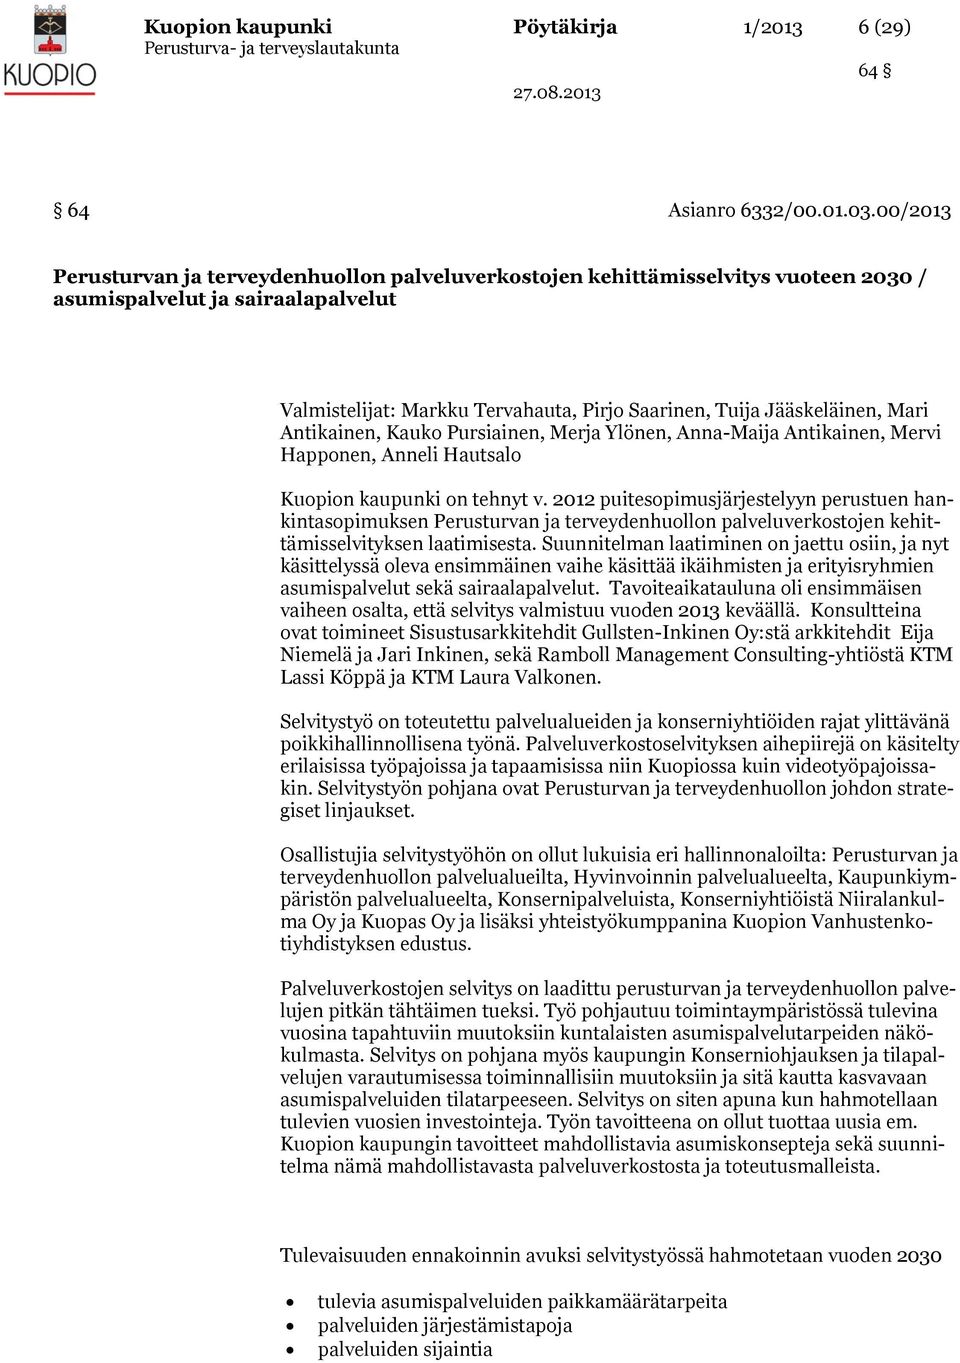 Mari Antikainen, Kauko Pursiainen, Merja Ylönen, Anna-Maija Antikainen, Mervi Happonen, Anneli Hautsalo Kuopion kaupunki on tehnyt v.